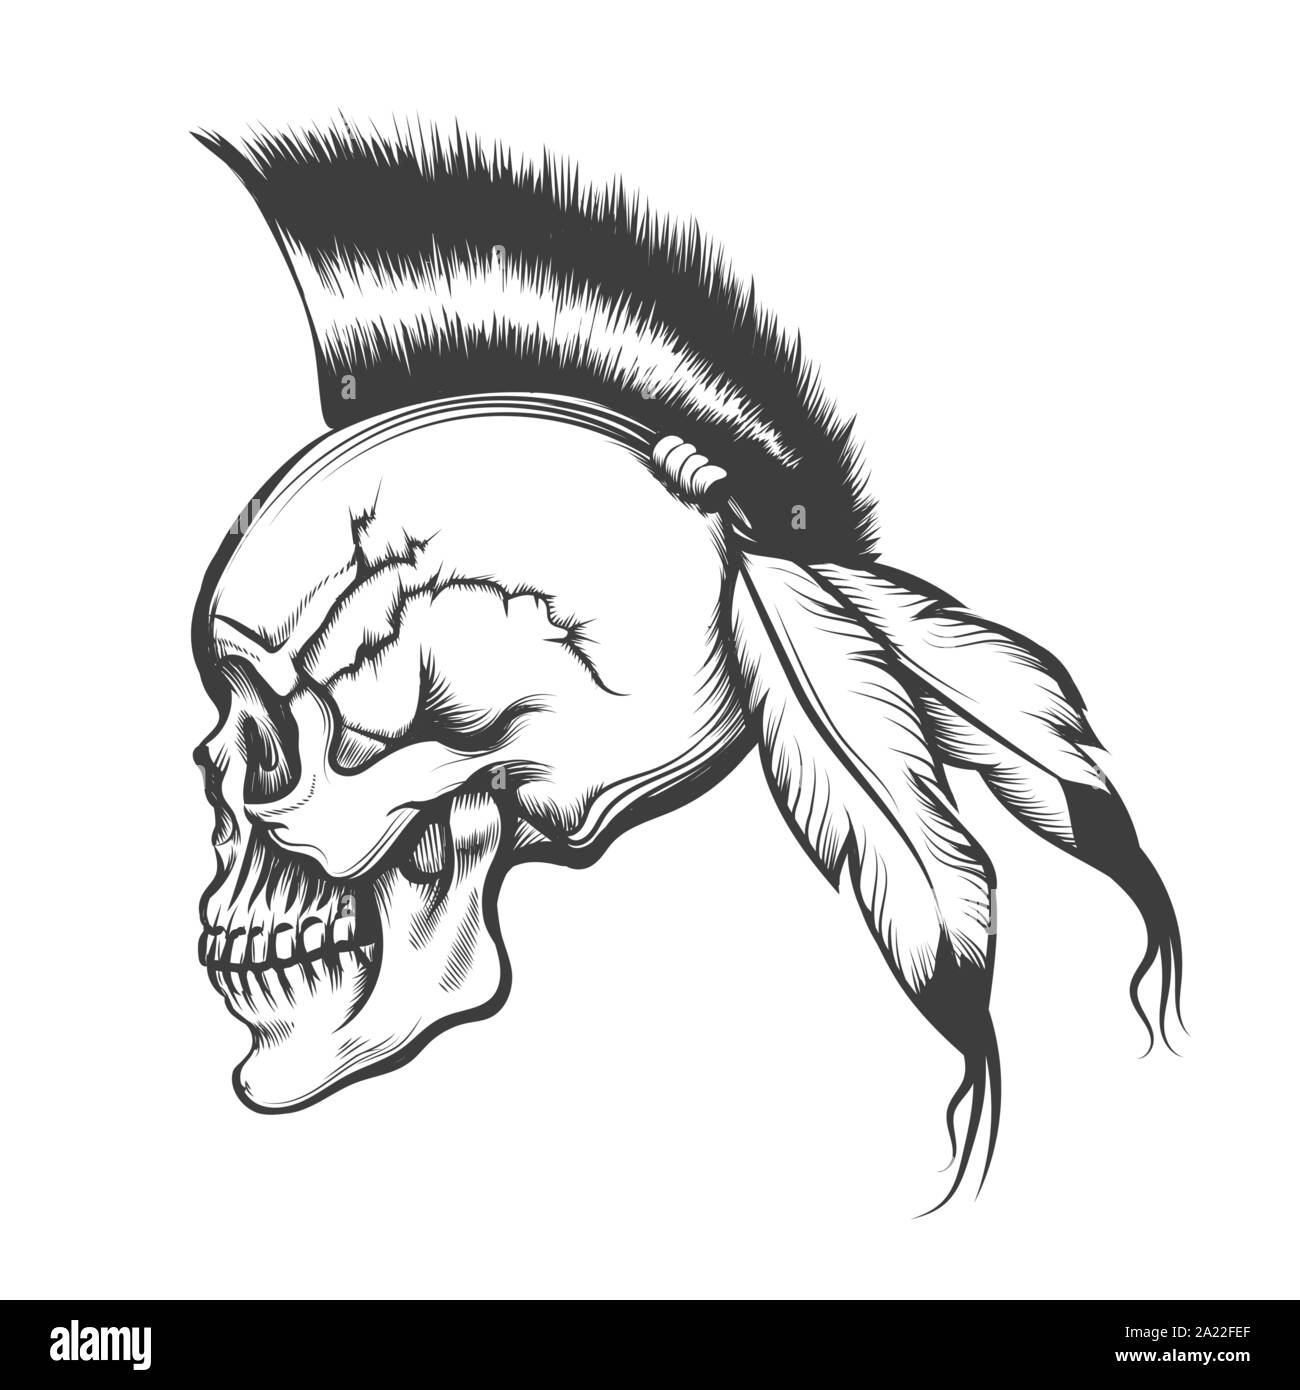 Crâne humain dessiné à la main avec les Iroquois style de cheveux et plumes d'aigle. Vector illustration Illustration de Vecteur